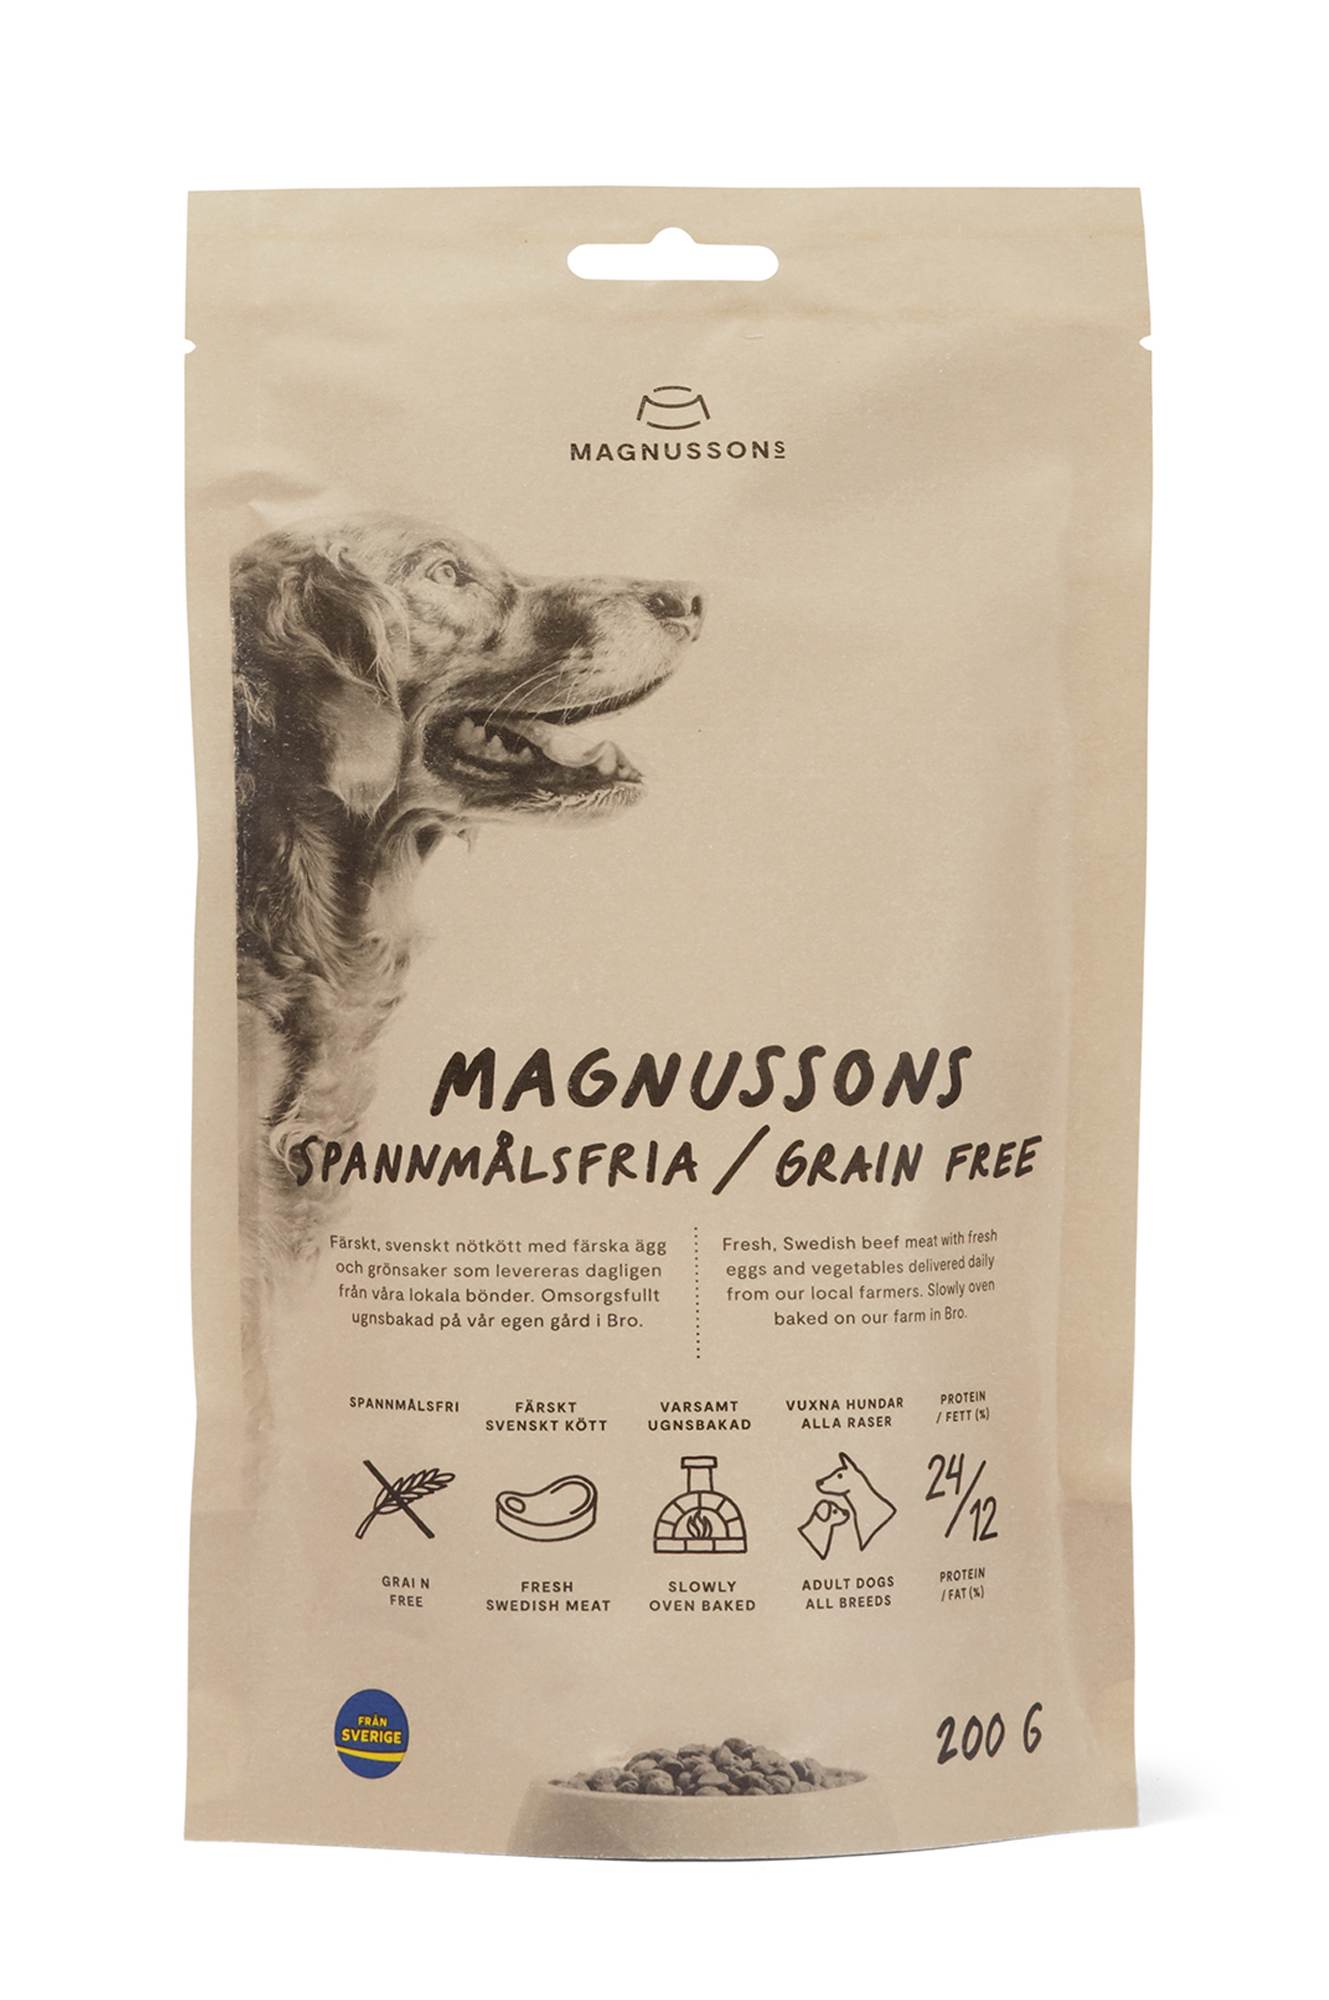 Корм для собак magnusson (магнуссон): ассортимент, анализ состава, преимущества и недостатки, выводы